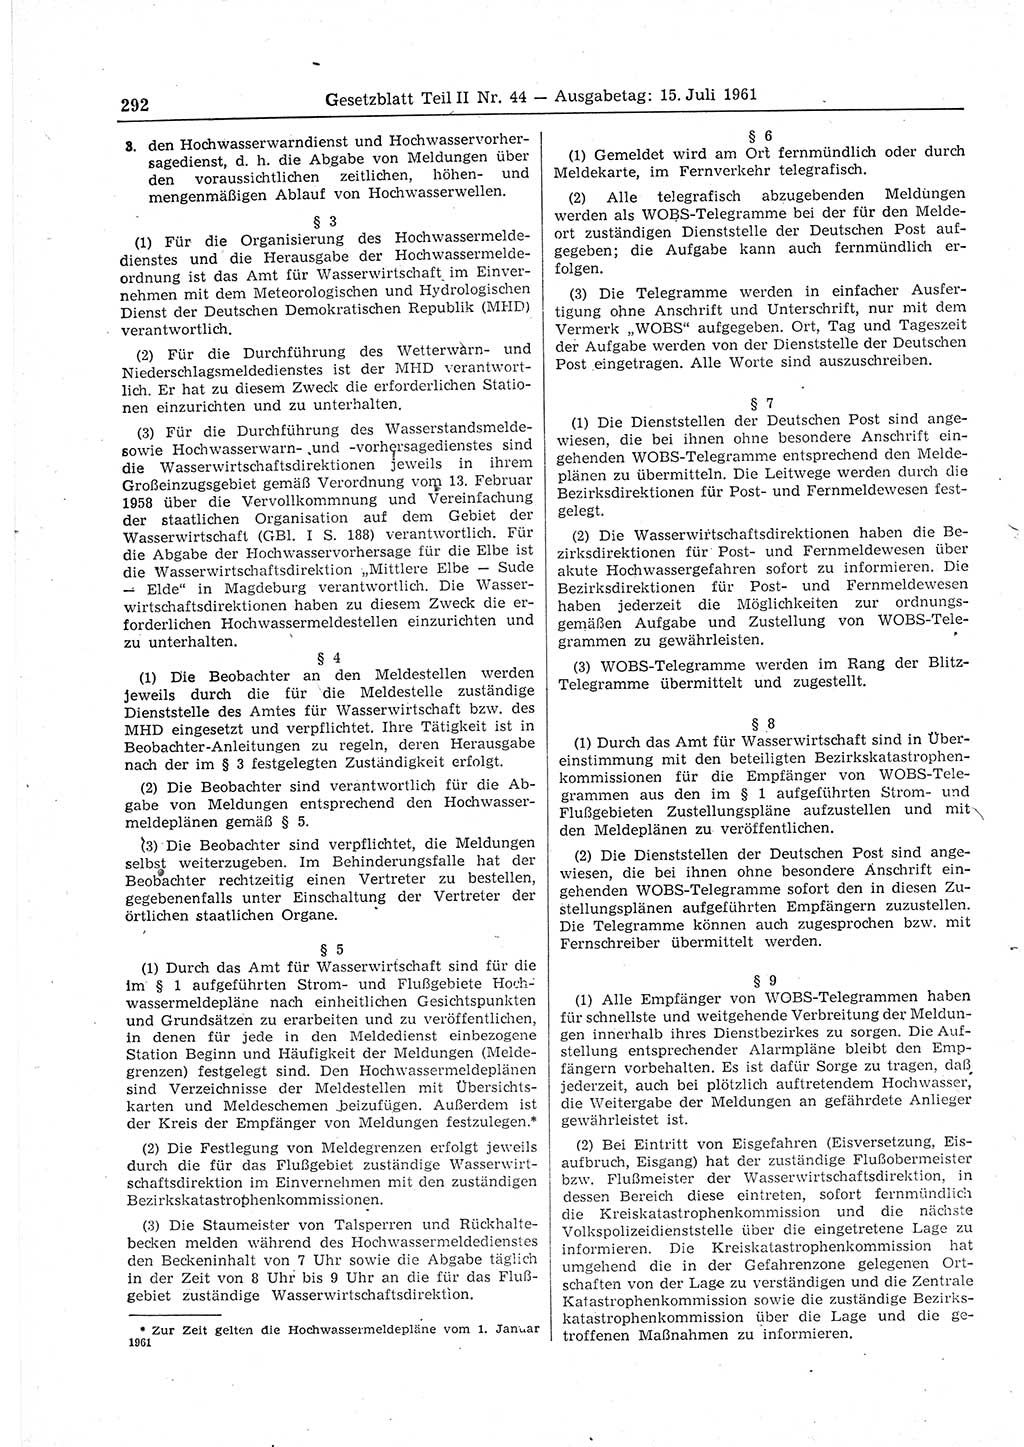 Gesetzblatt (GBl.) der Deutschen Demokratischen Republik (DDR) Teil ⅠⅠ 1961, Seite 292 (GBl. DDR ⅠⅠ 1961, S. 292)